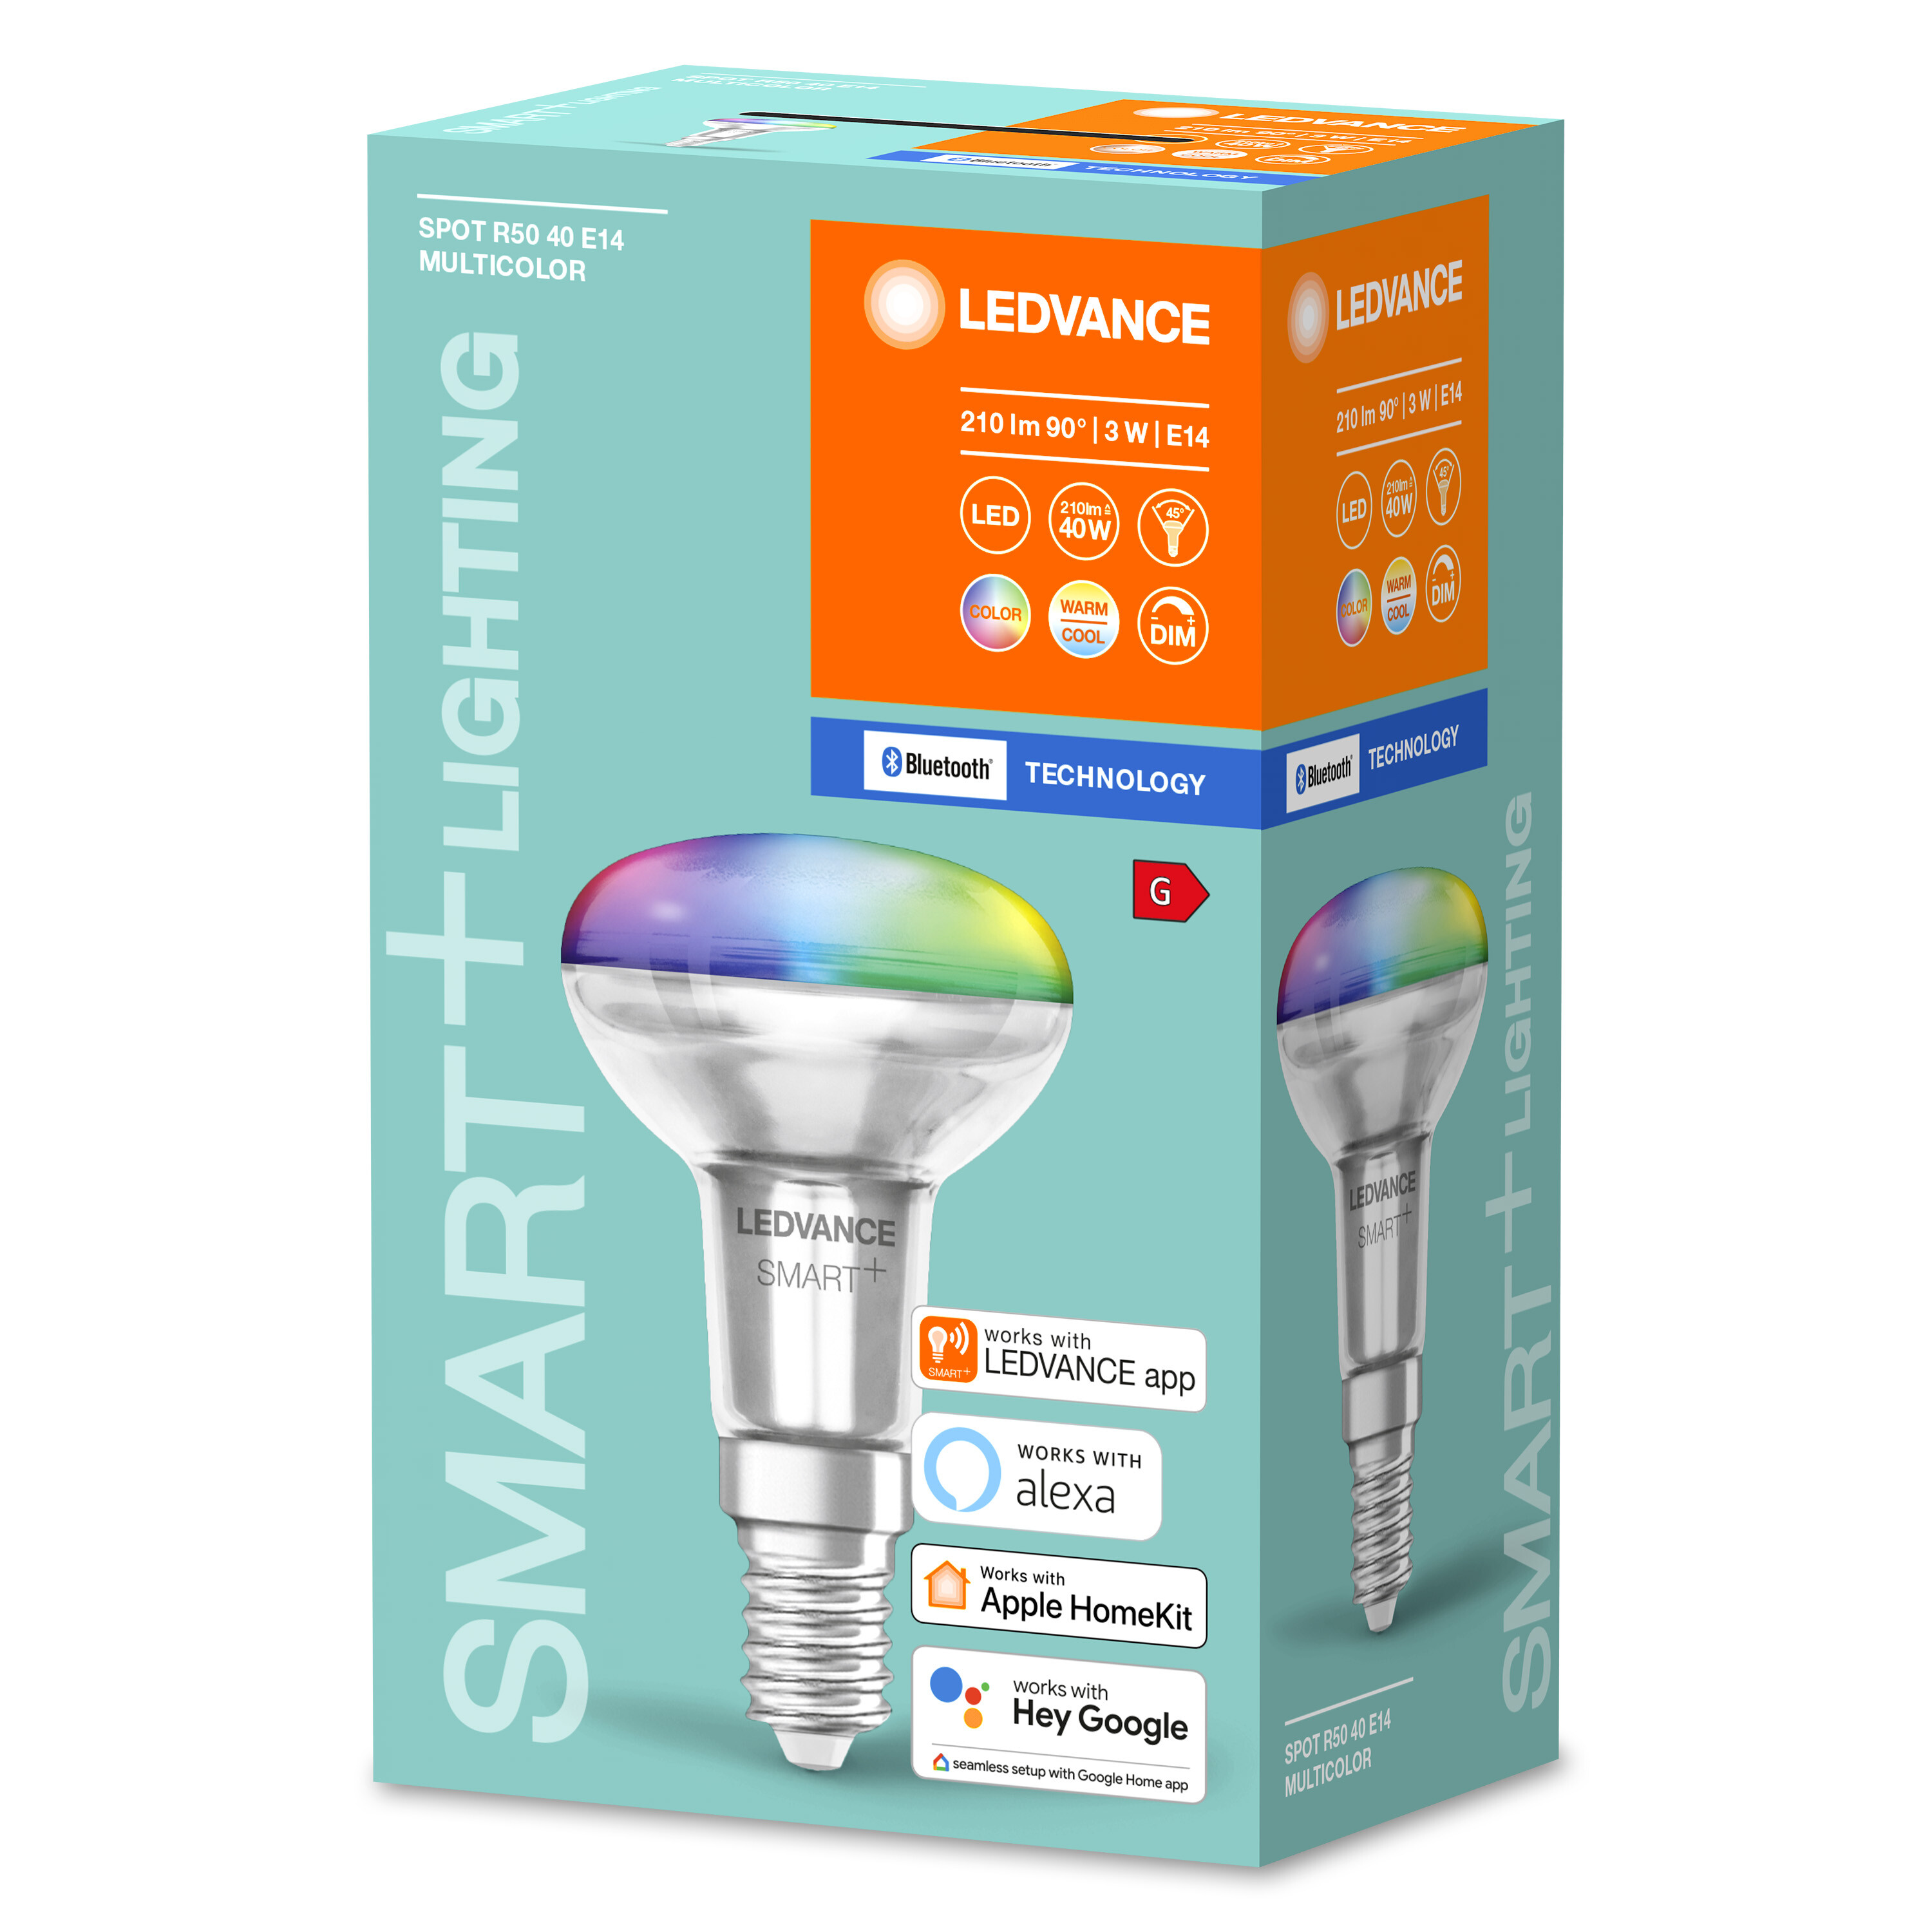 änderbar CONCENTRA Multicolor BT Lichtfarbe LEDVANCE LED 3W 40 Multicolor R50 E14 Lampe SPOT SMART+